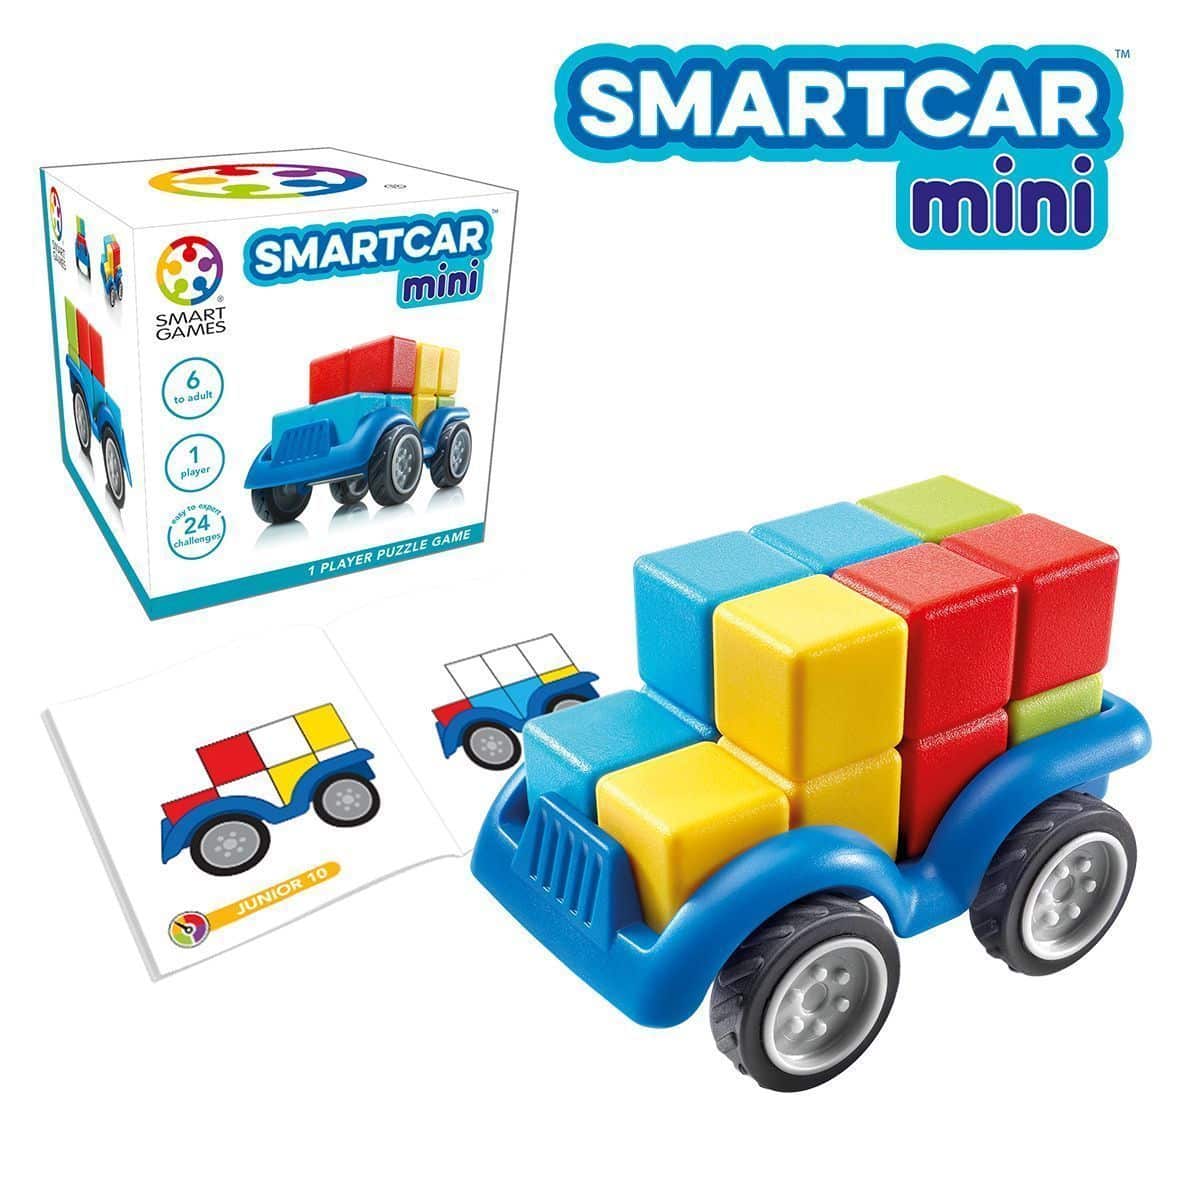 Smartcar Mini Smartgames